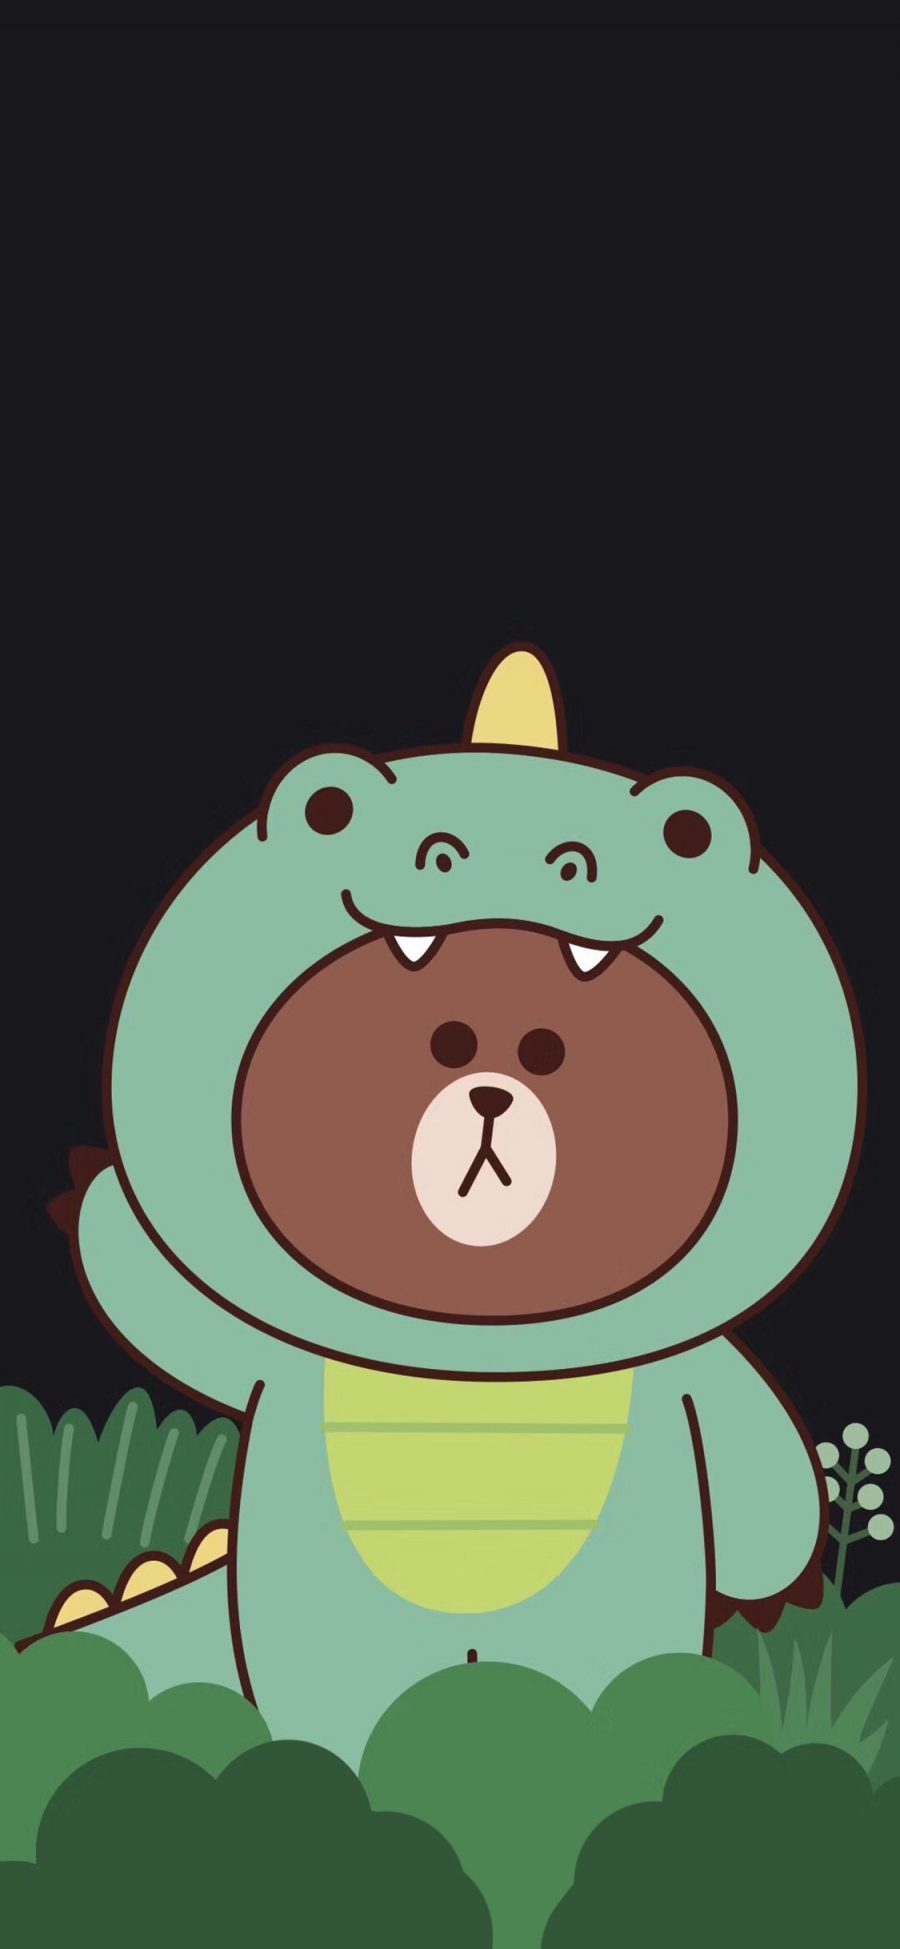 [2436×1125]布朗熊 可爱 卡通 line friends 鳄鱼服 苹果手机动漫壁纸图片